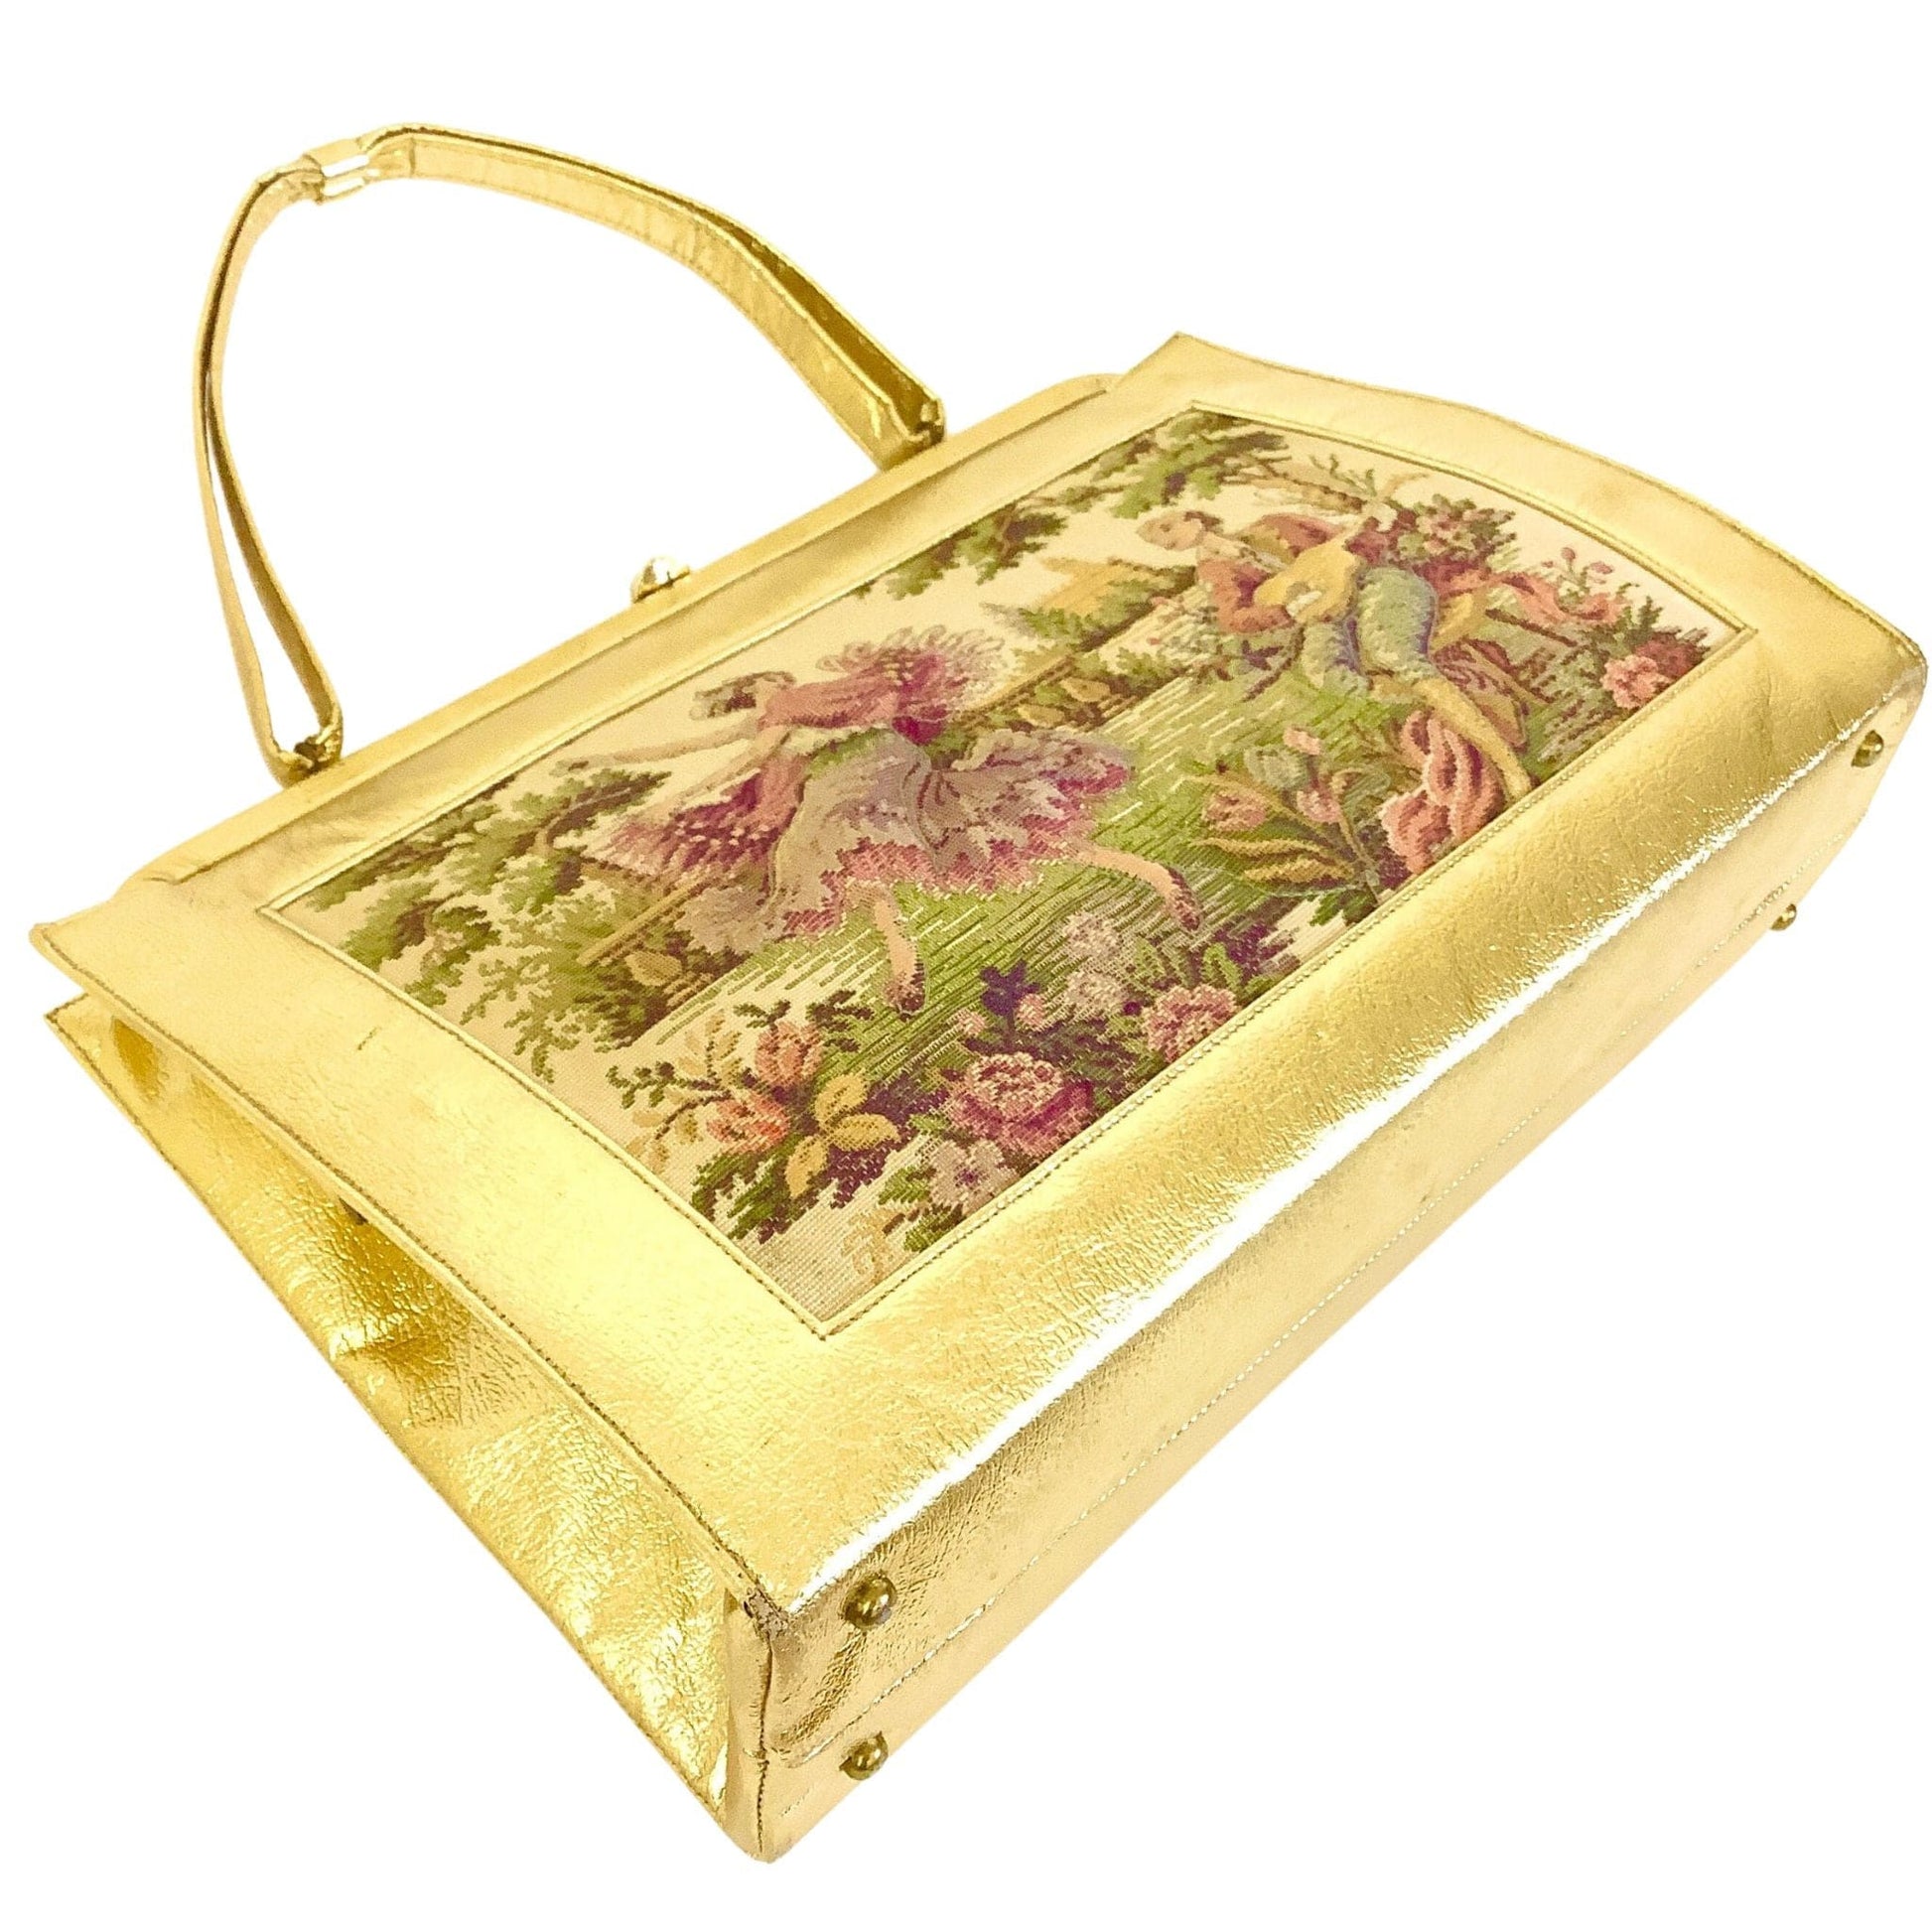 1980s Vintage Tapestry Bag Gold / Leather / Vintage 1980s